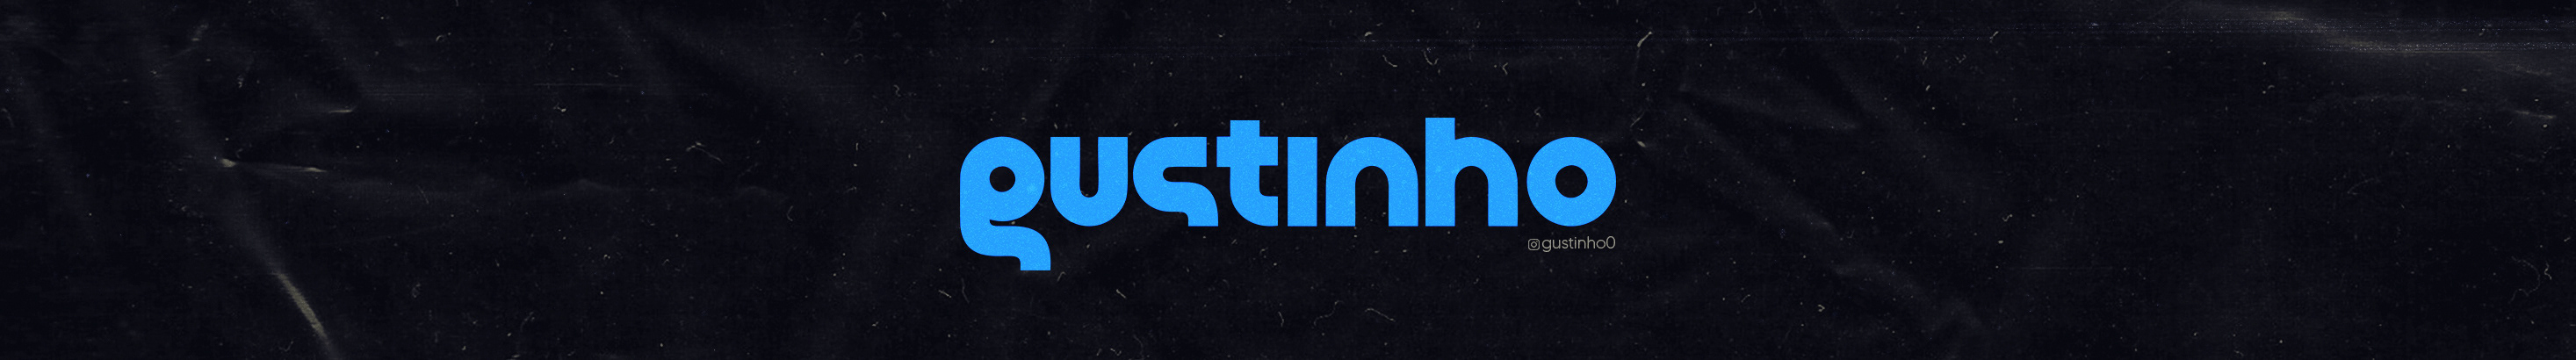 Gustinho Design ✪s profilbanner